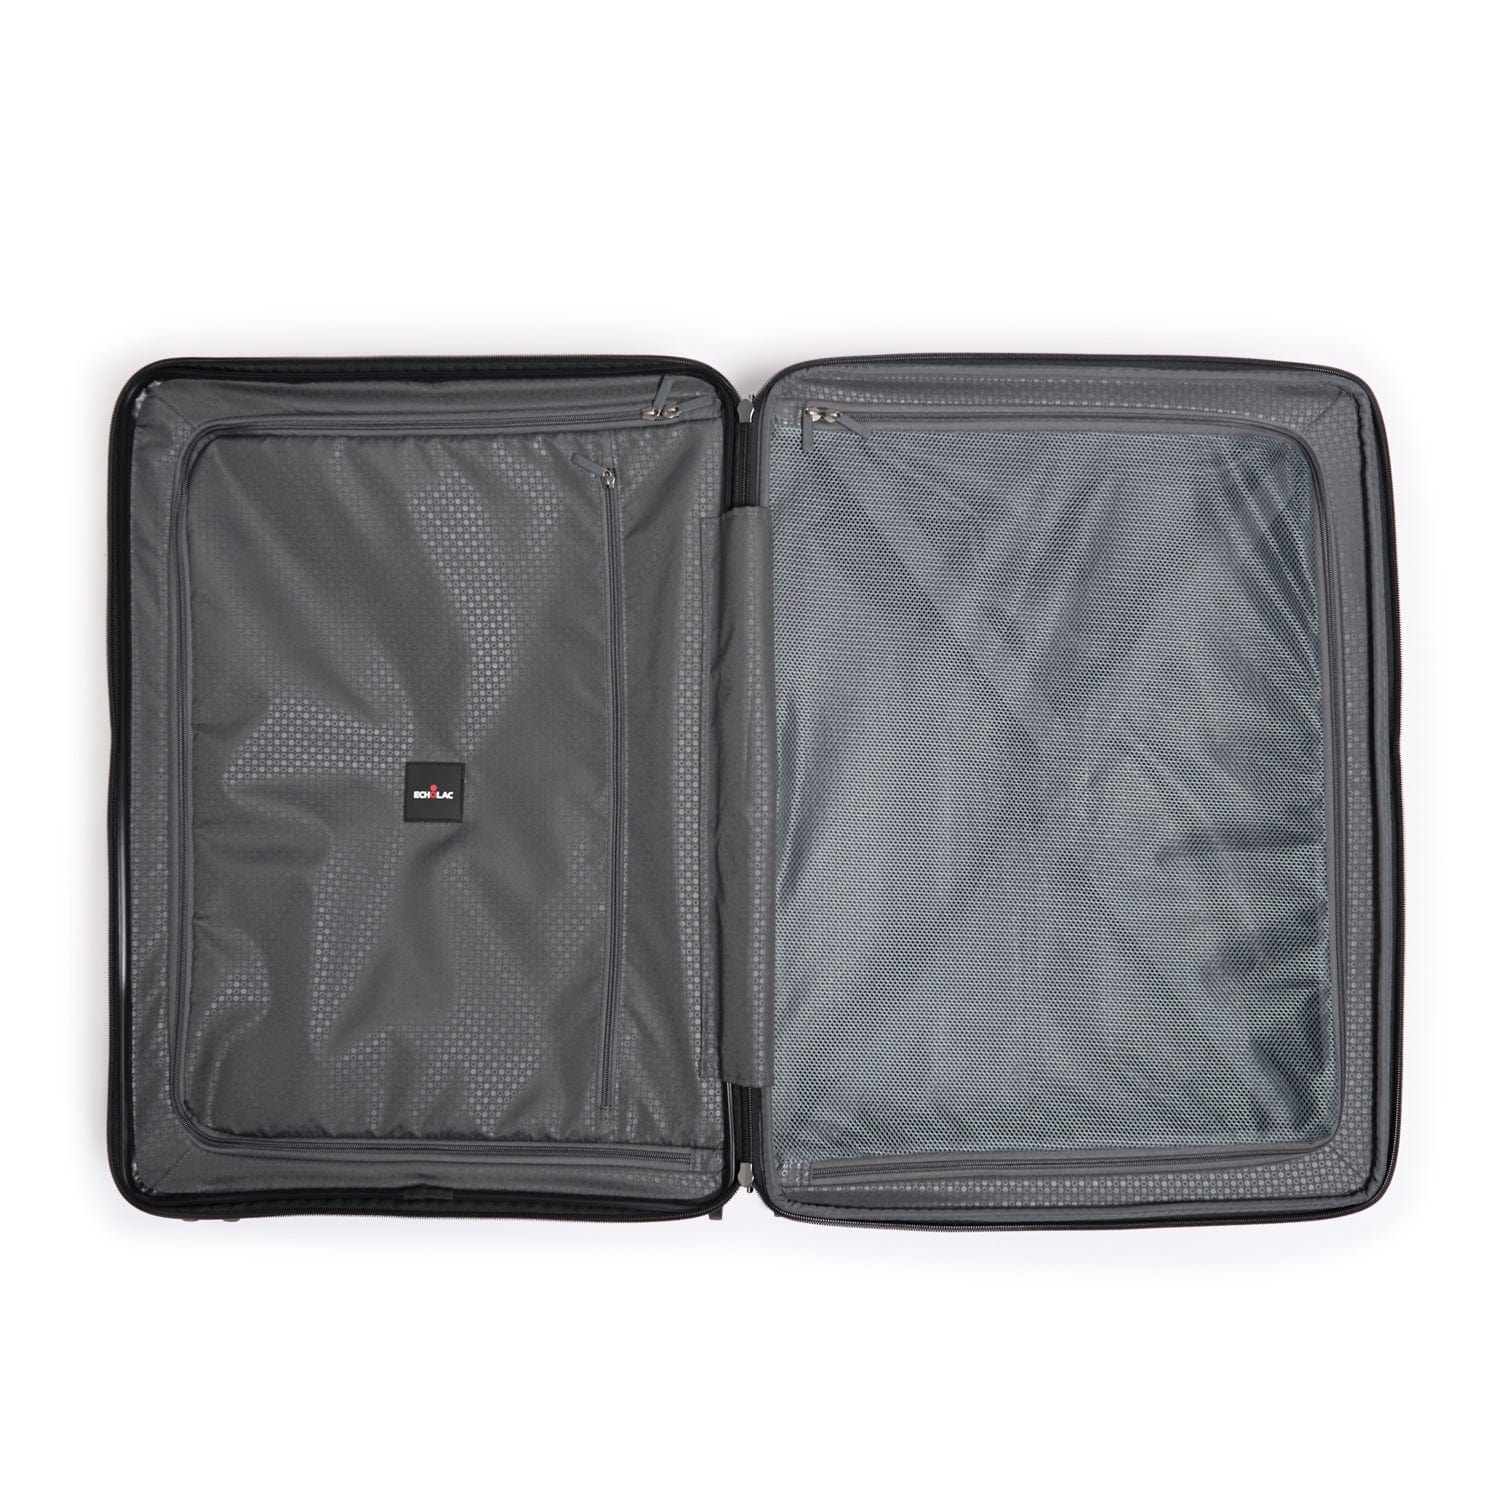 عربة حقائب سفر إيكولاك فورزا - ٥٥ سم - ٤ عجلات مزدوجة قابلة للتوسيع - أسود - PW005 20 أسود